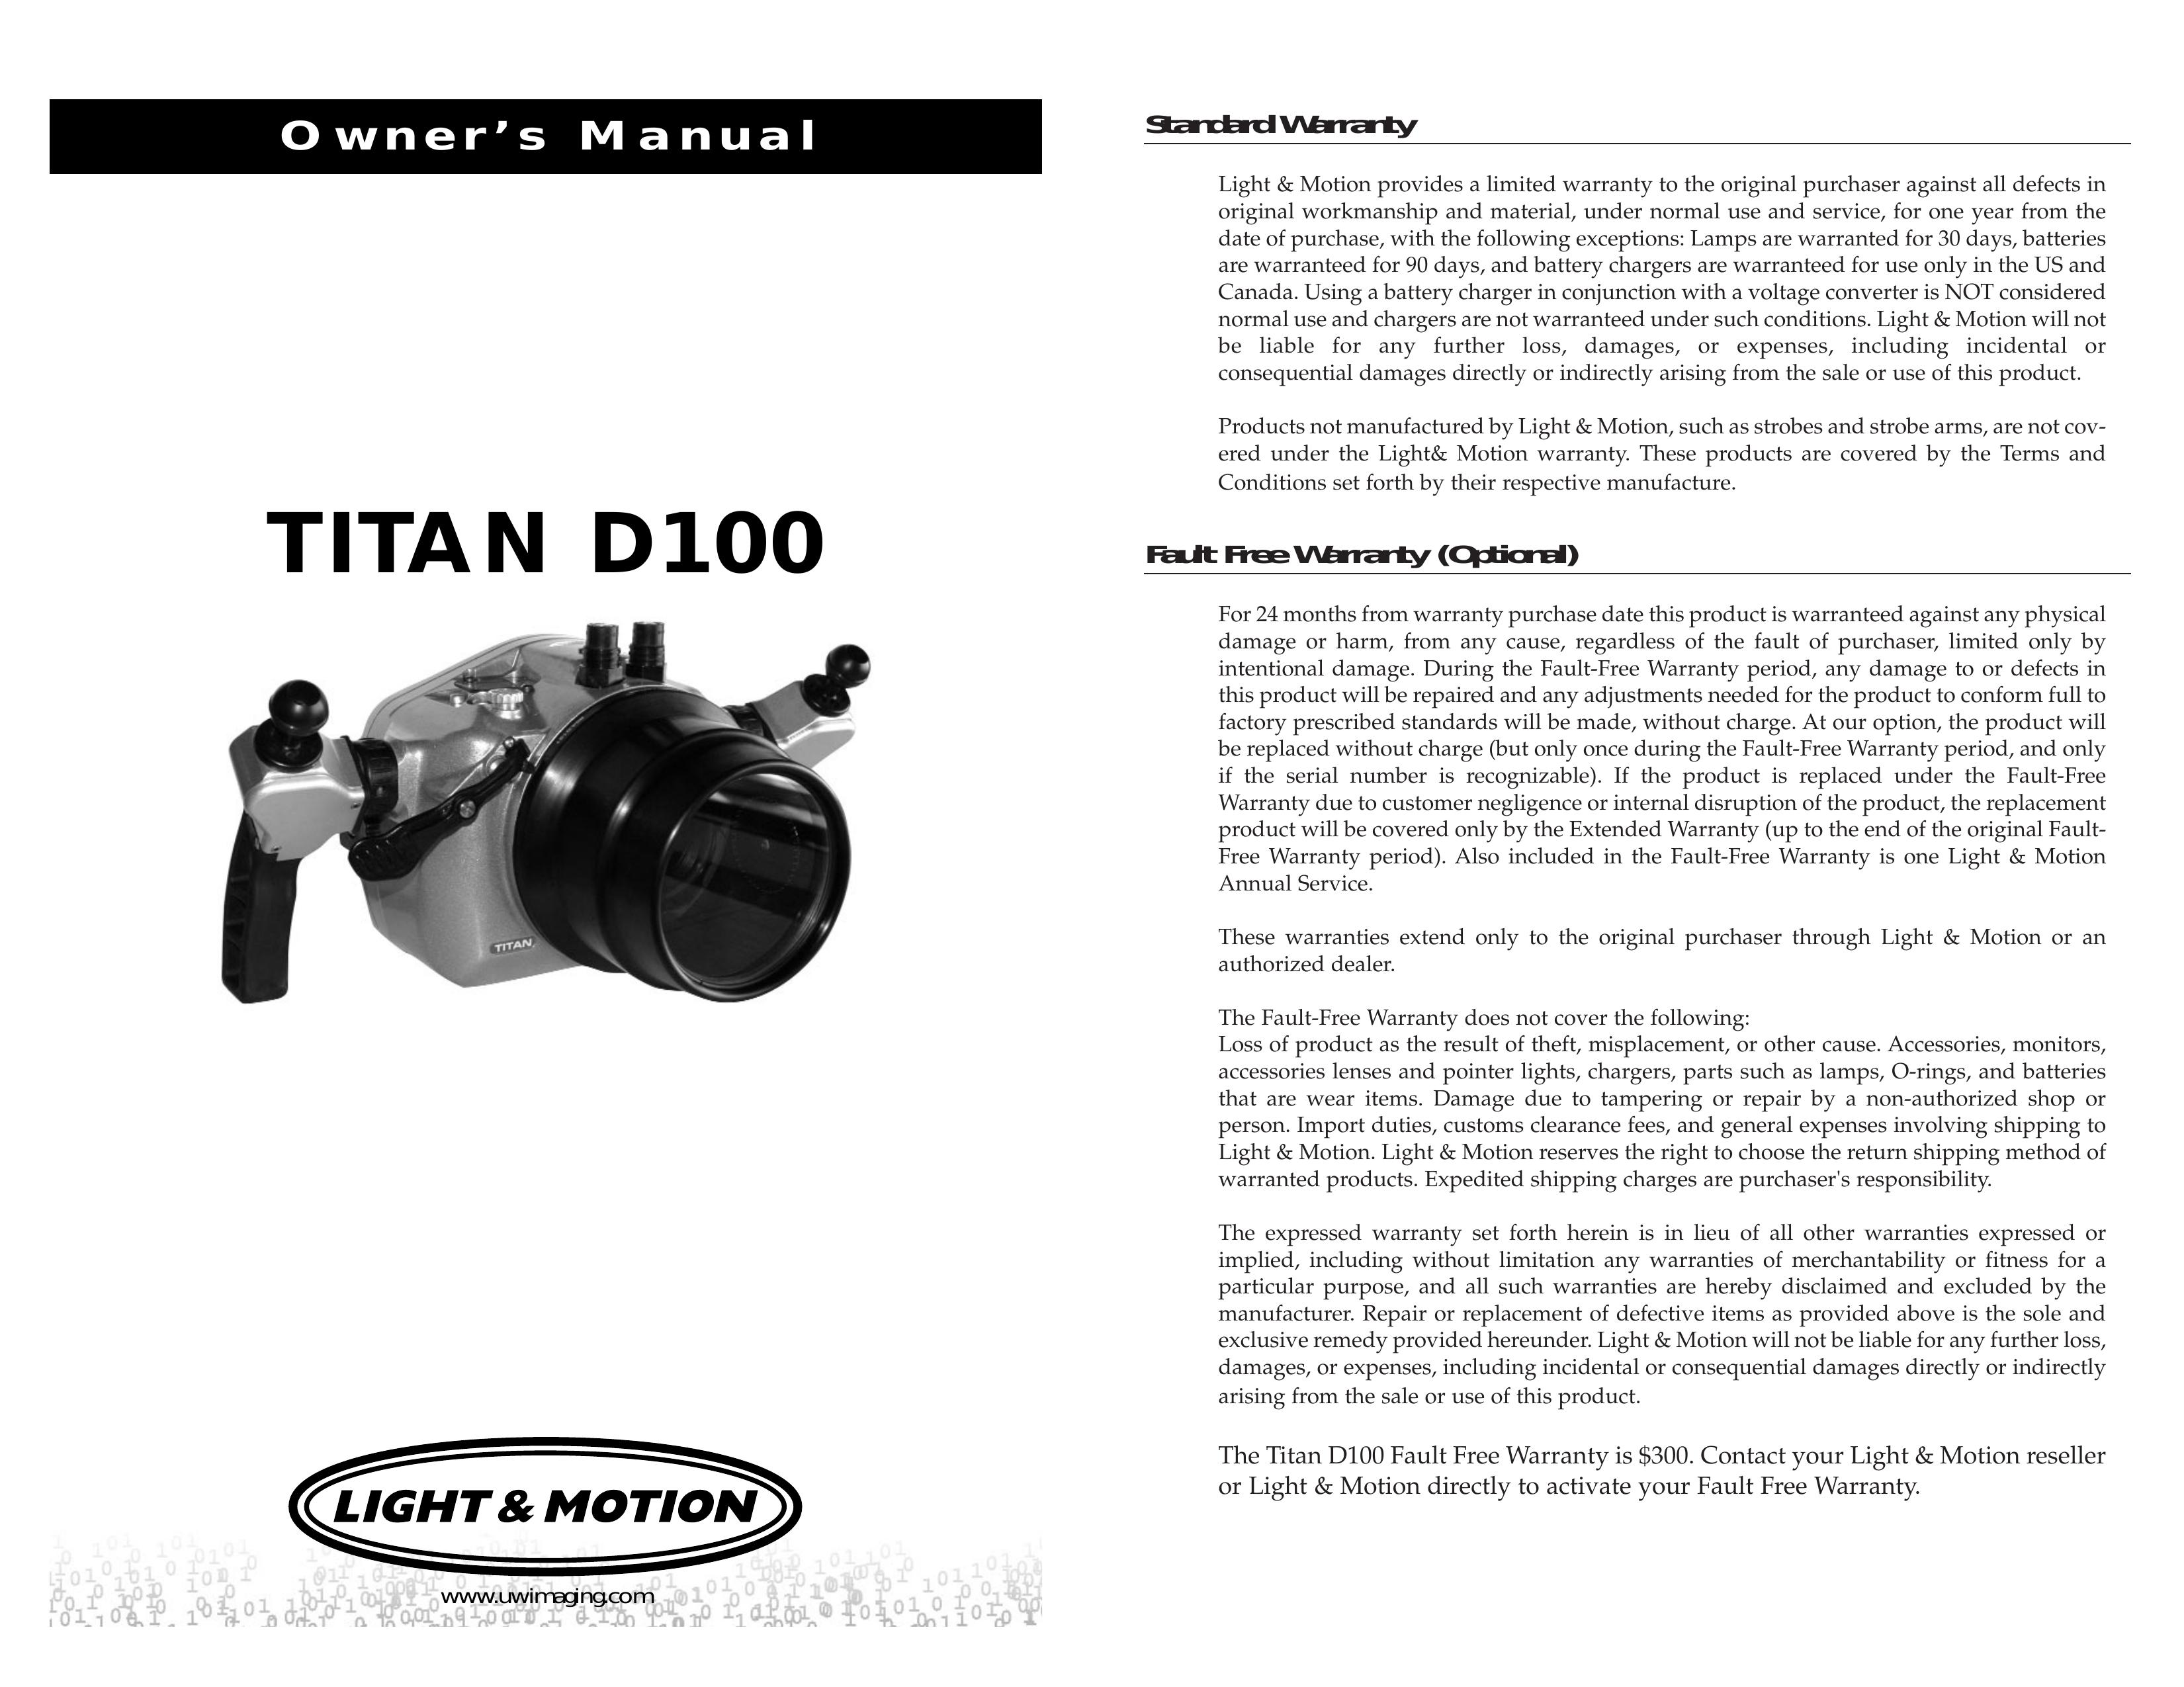 Light & Motion TITAN D100 Digital Camera User Manual